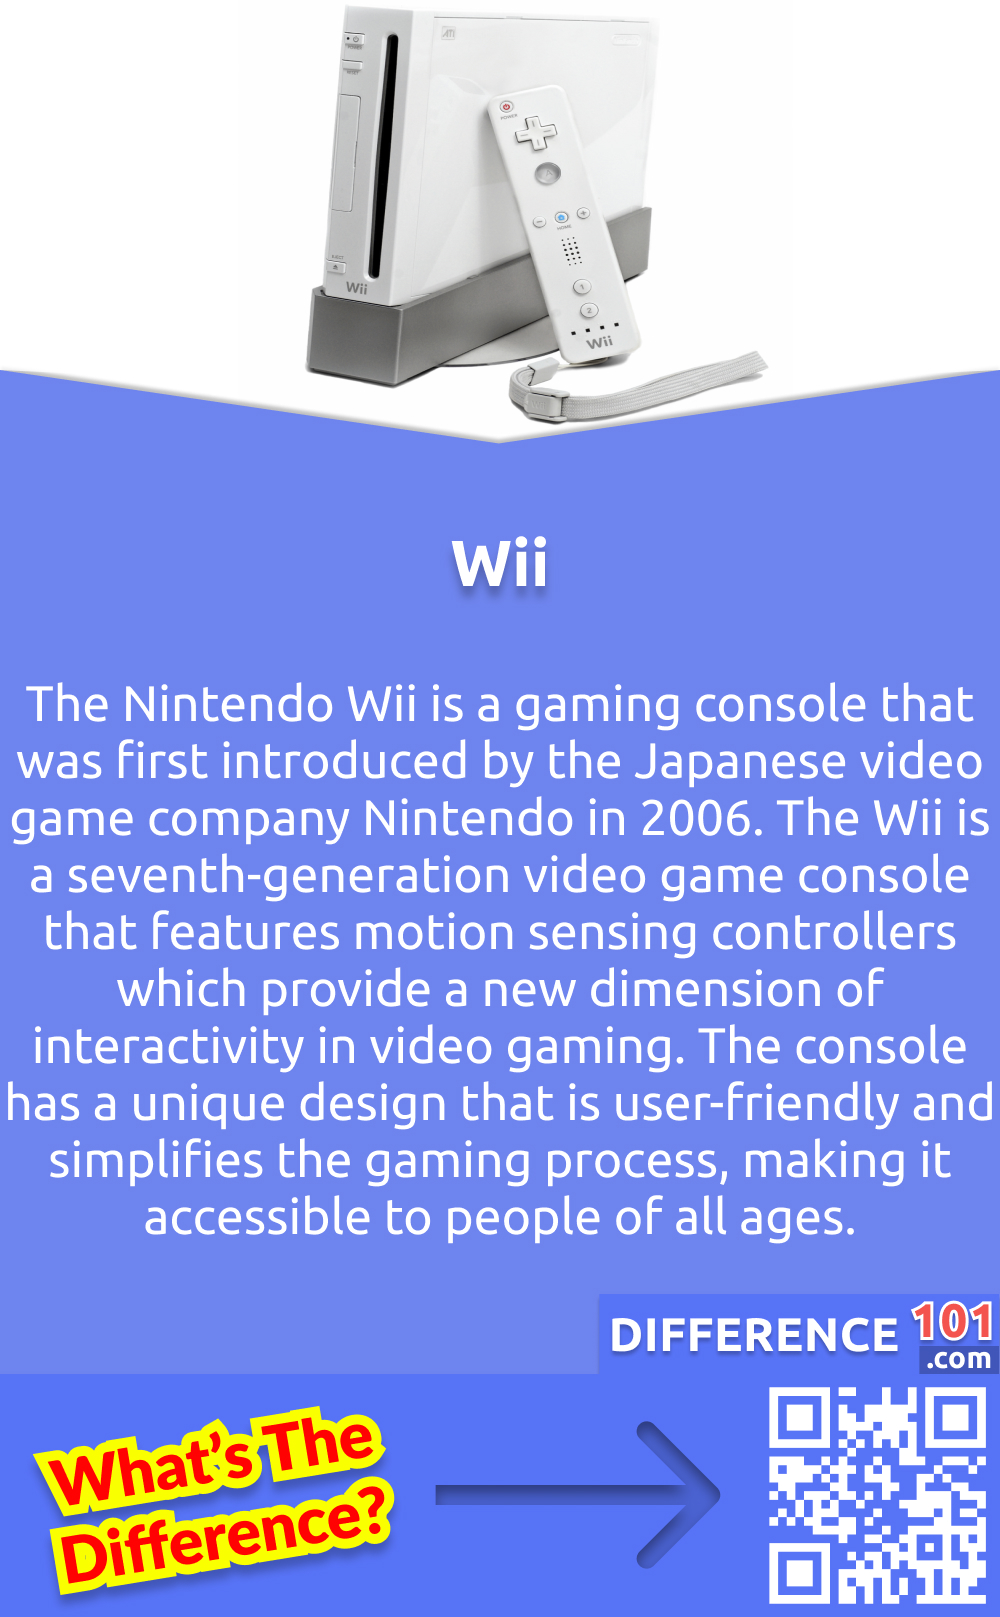 Was ist die Wii? Die Nintendo Wii ist eine Spielkonsole, die von der japanischen Videospielfirma Nintendo im Jahr 2006 auf den Markt gebracht wurde. Sie gilt als würdiger Nachfolger der Vorgängerkonsole GameCube. Die Wii ist eine Videospielkonsole der siebten Generation, die mit bewegungssensitiven Controllern ausgestattet ist, die eine neue Dimension der Interaktivität bei Videospielen ermöglichen. Die Konsole hat ein einzigartiges Design, das benutzerfreundlich ist und den Spielprozess vereinfacht, so dass sie für Menschen jeden Alters zugänglich ist. Die große Auswahl an Spielen deckt ein breites Spektrum an Demografien und Genres ab, darunter Sport, Rennen, Action und Abenteuer. Insgesamt hat sich die Nintendo Wii als eine beliebte und innovative Spielkonsole erwiesen, die bei Spielern auf der ganzen Welt erfolgreich ist.